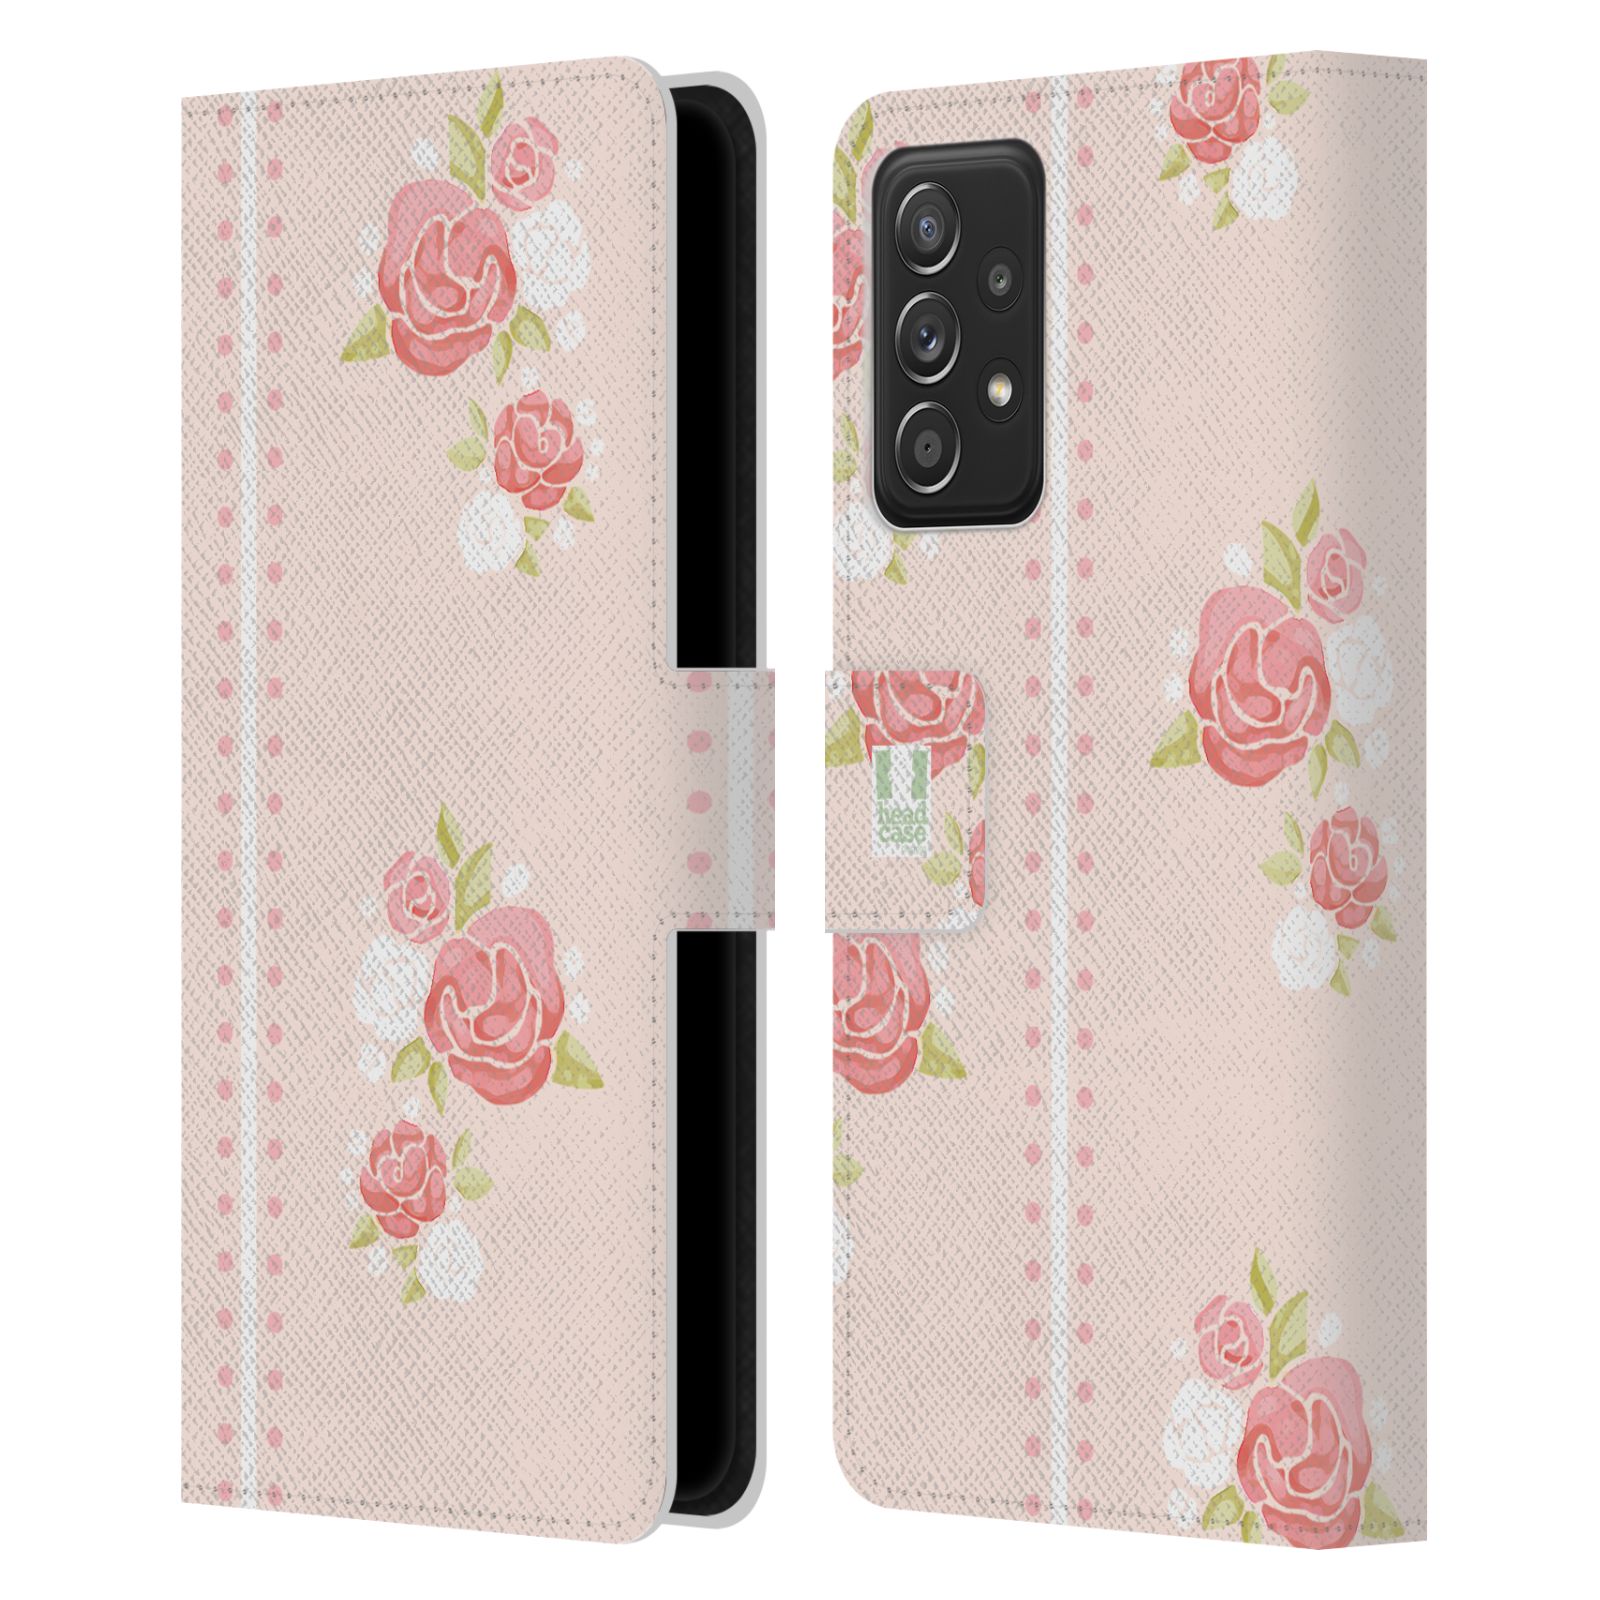 Pouzdro HEAD CASE na mobil Samsung Galaxy A52 / A52 5G / A52s 5G Francouzský venkov pruhy a růže růžová barva